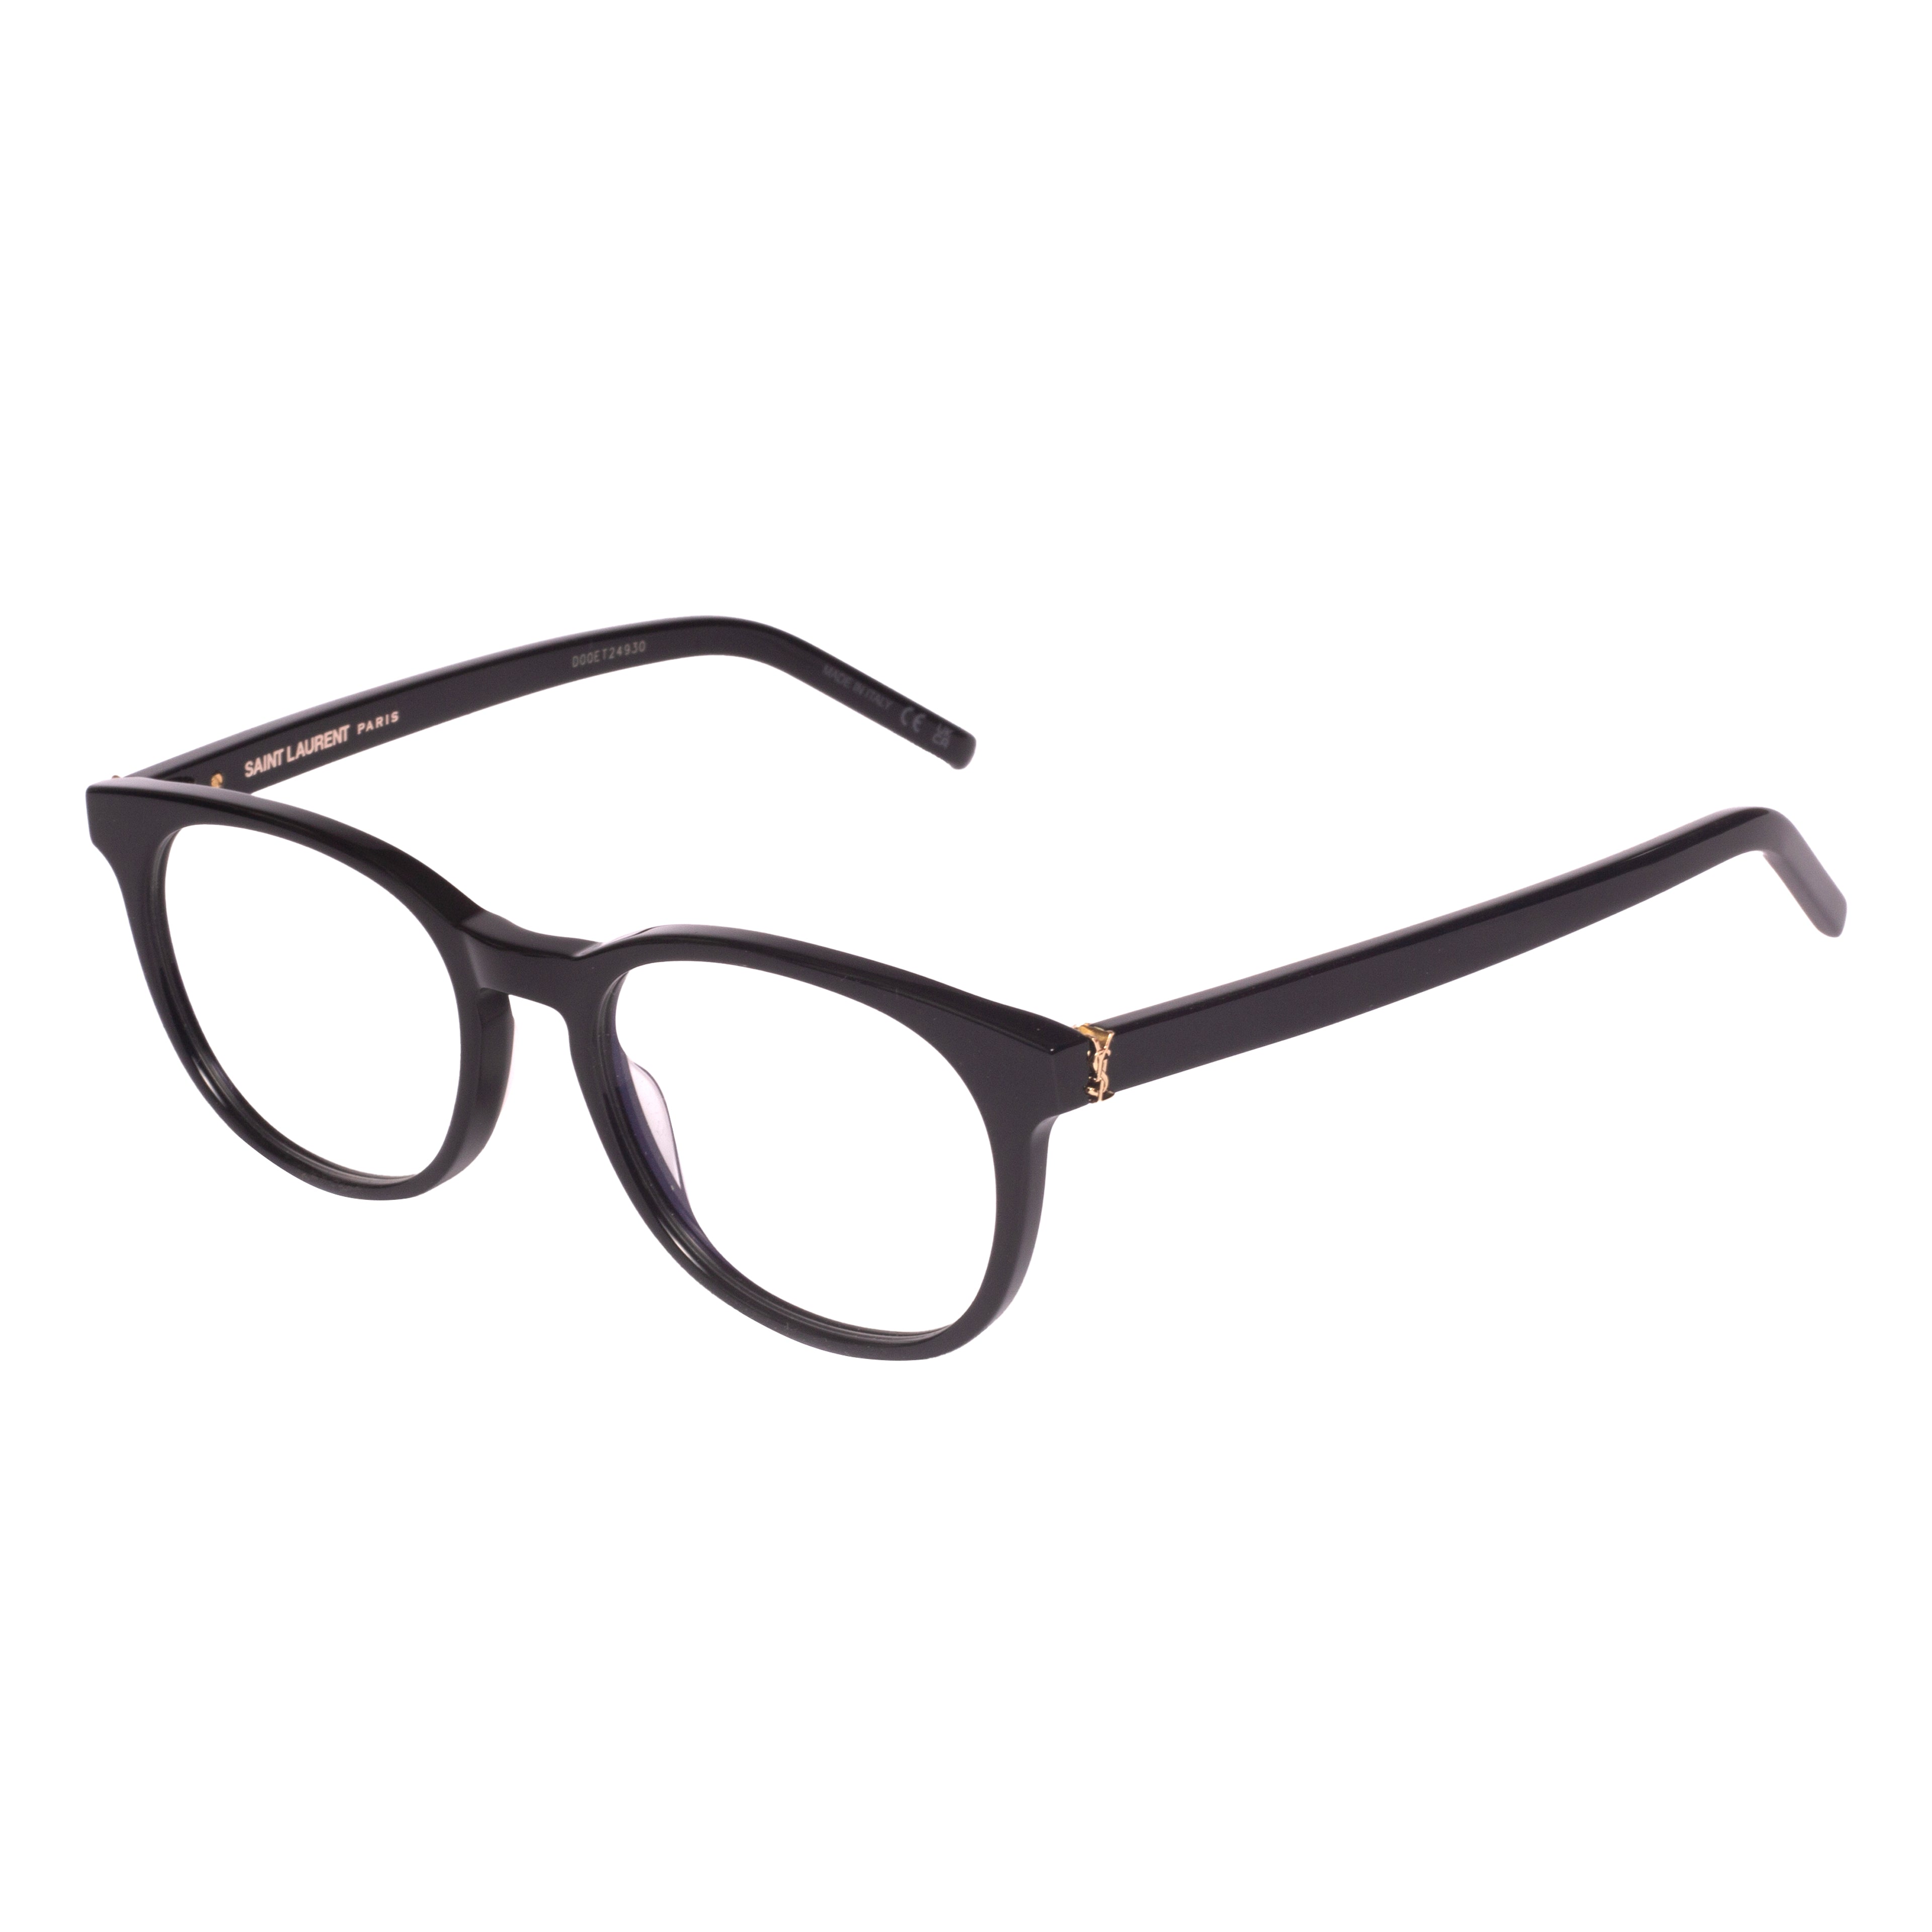 Saint Laurent-SL M111-52-001 Eyeglasses - Premium Eyeglasses from Saint Laurent - Just Rs. 23300! Shop now at Laxmi Opticians